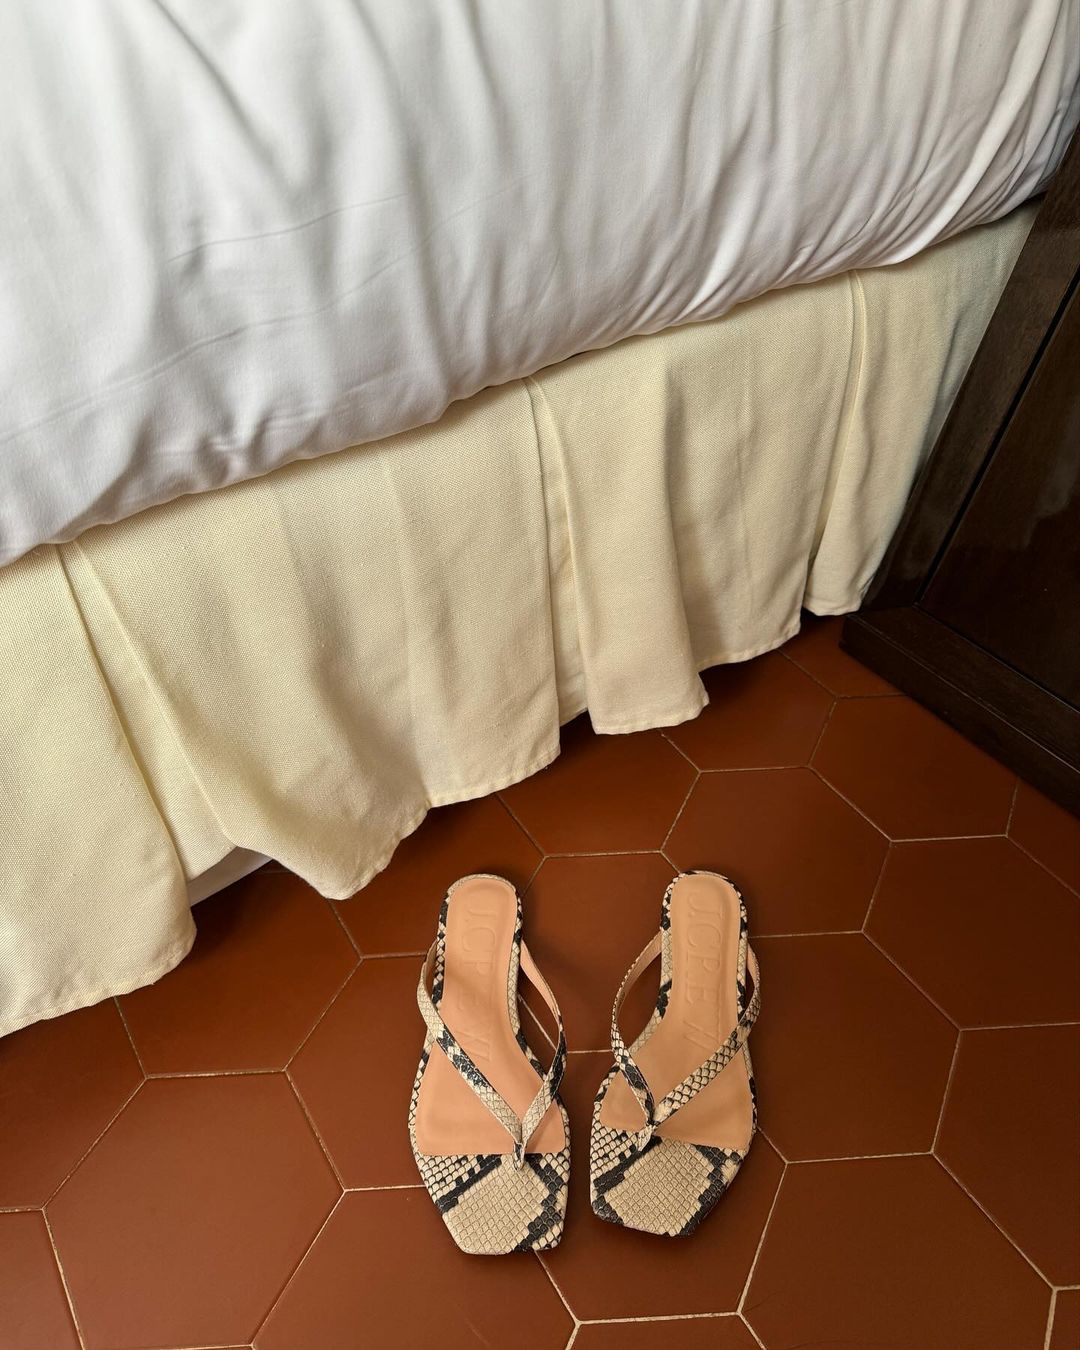 Elegant Summer Style: @monikh shares a snap of snake-print thong sandals on a terracotta tile floor